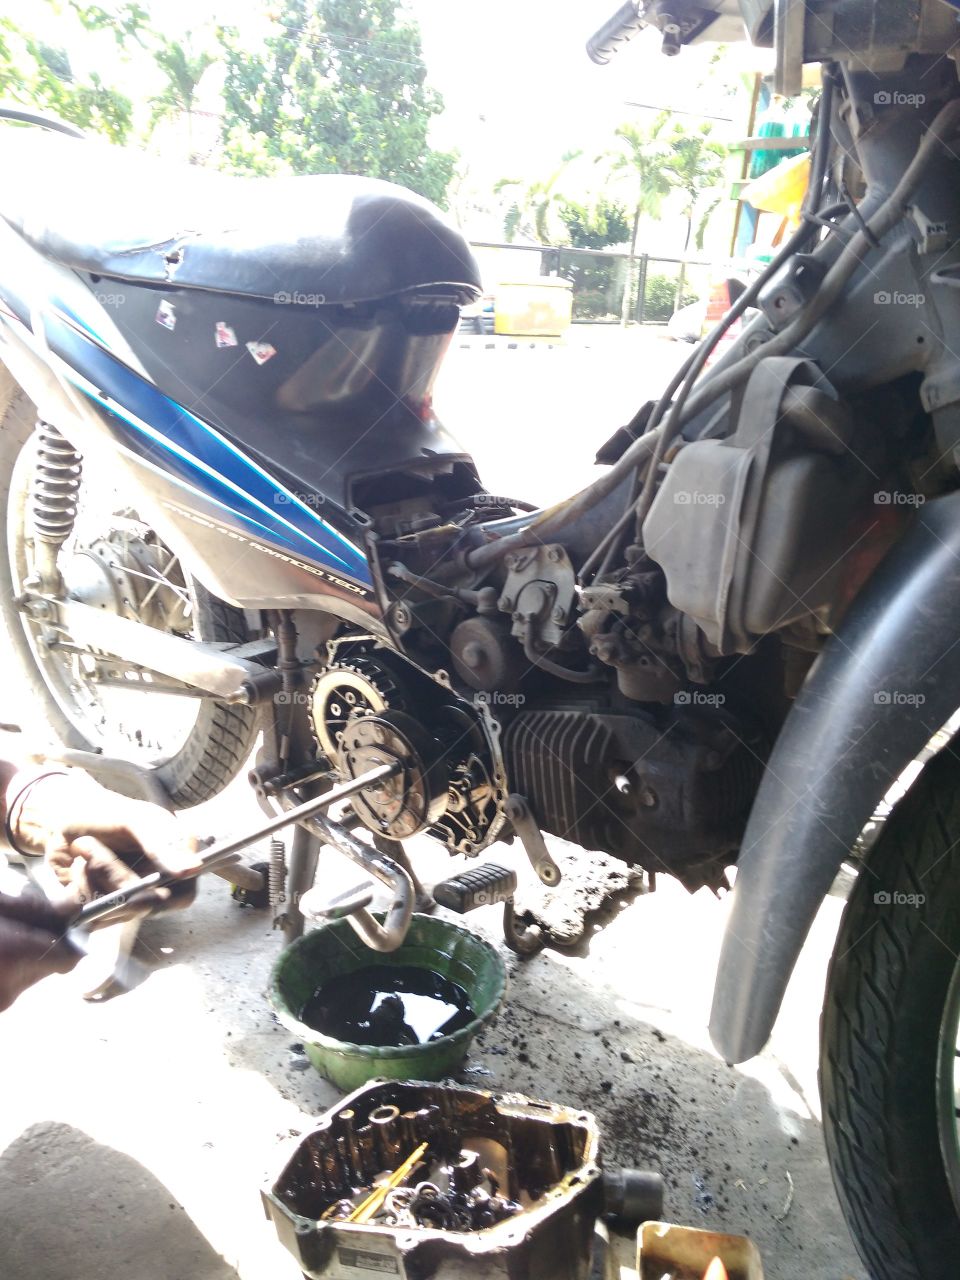 Motorcycle Repair